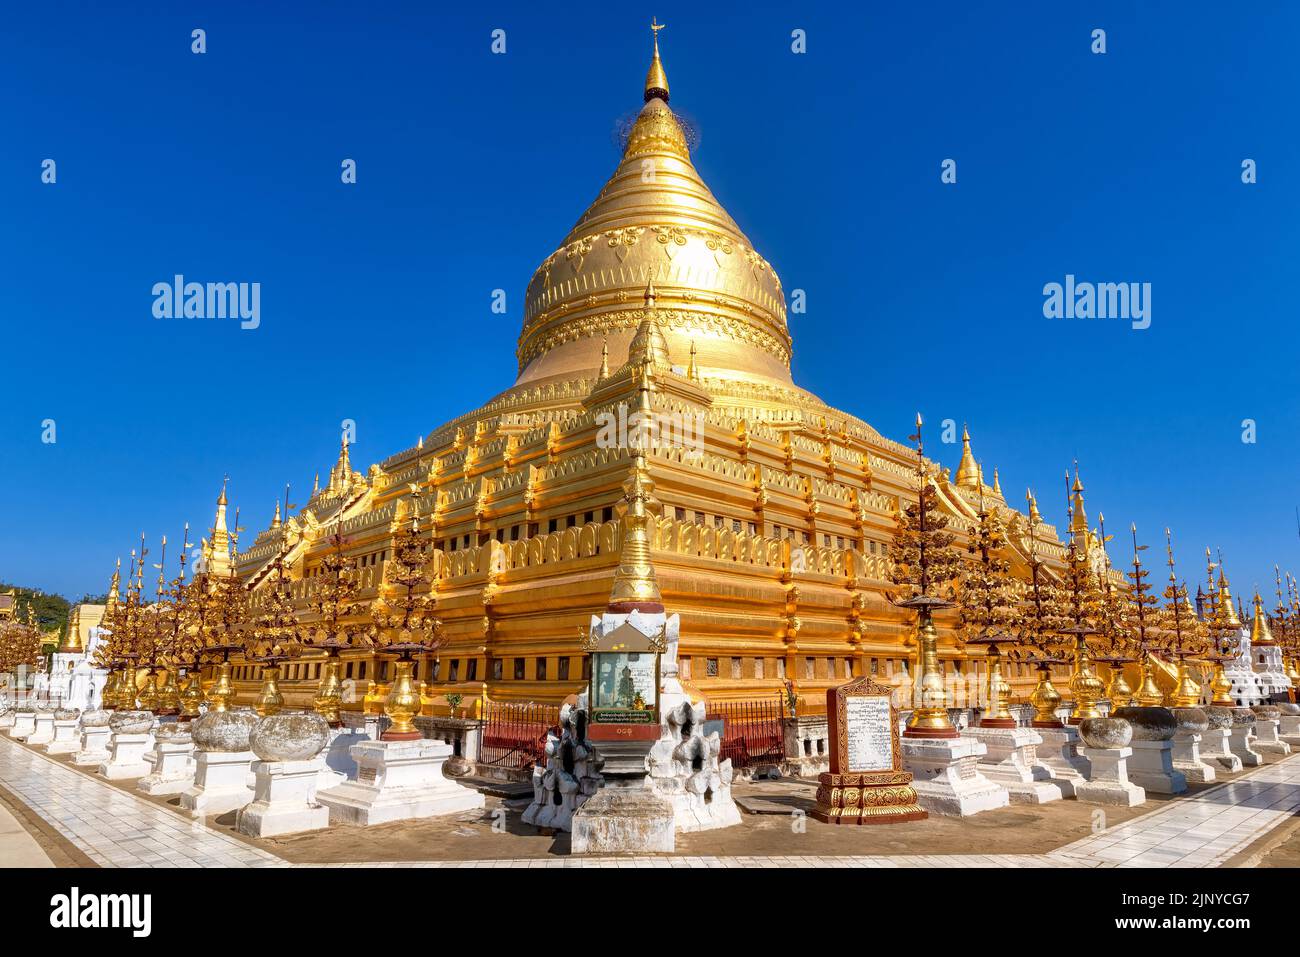 La Pagode Shwezigon à Bagan, au Myanmar. Se compose d'un stupa feuille-dorée circulaire entouré de temples et de sanctuaires plus petits Banque D'Images